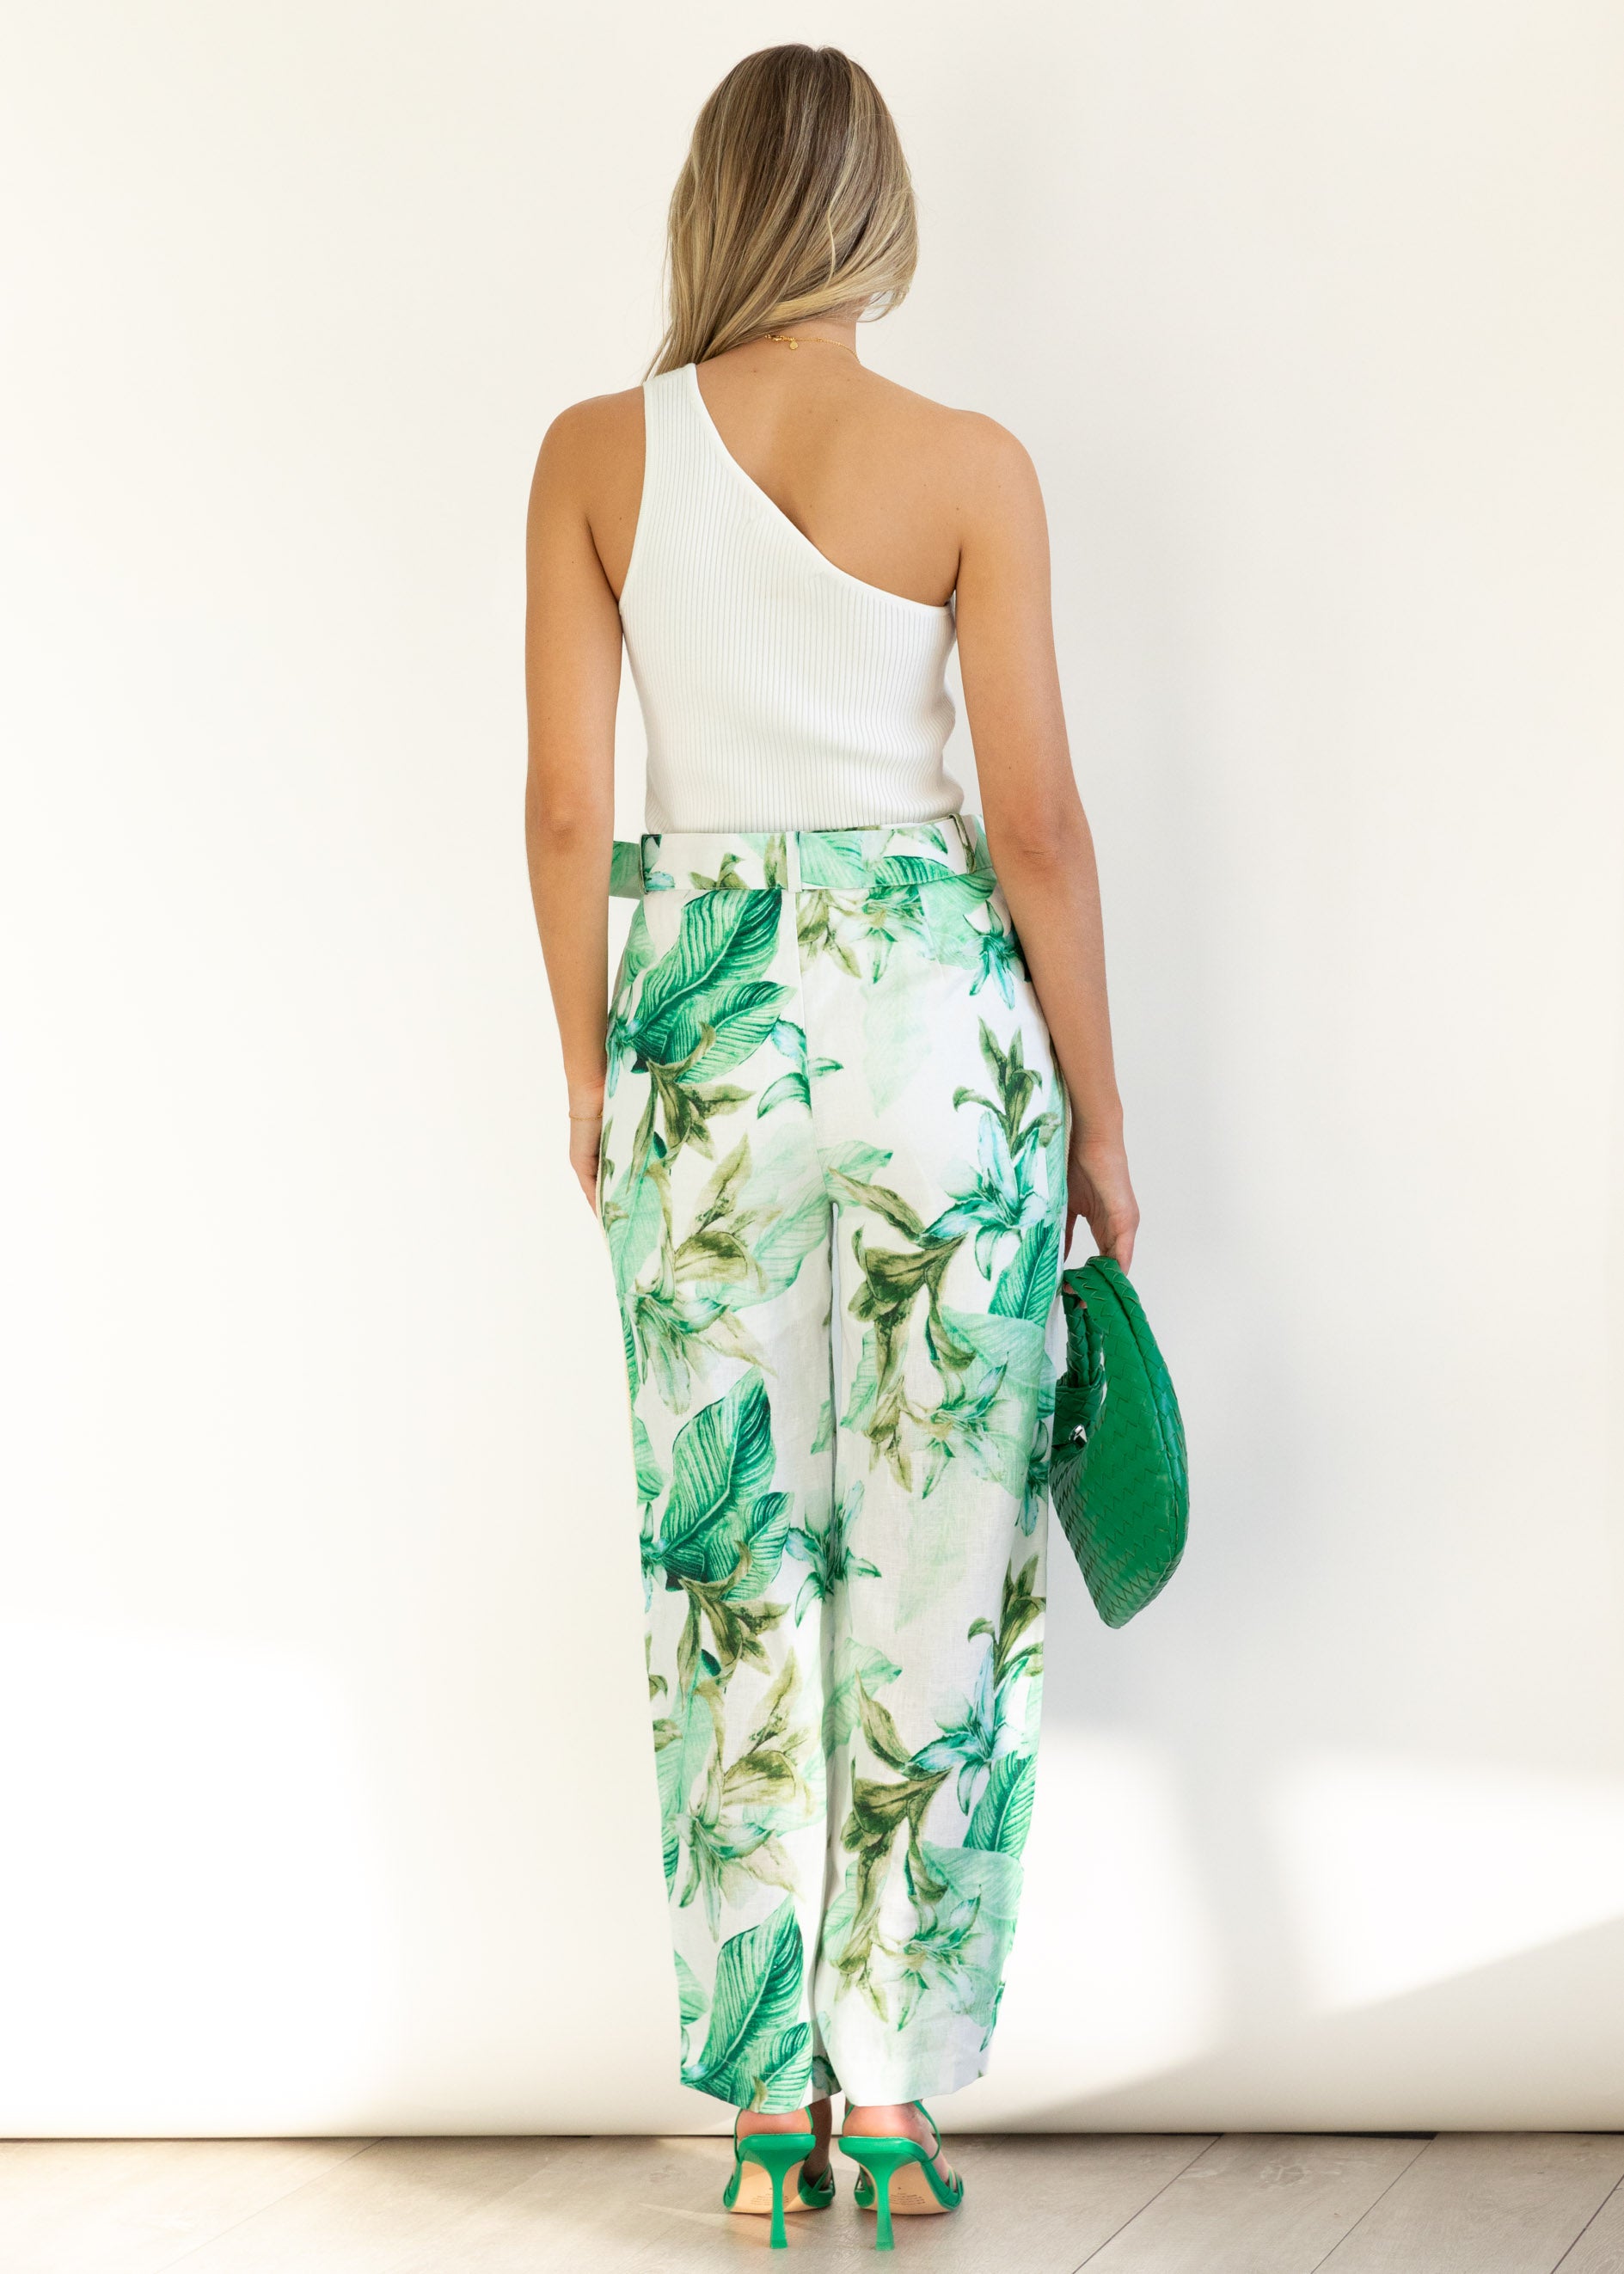 Monet Linen Pants - Green Flowers